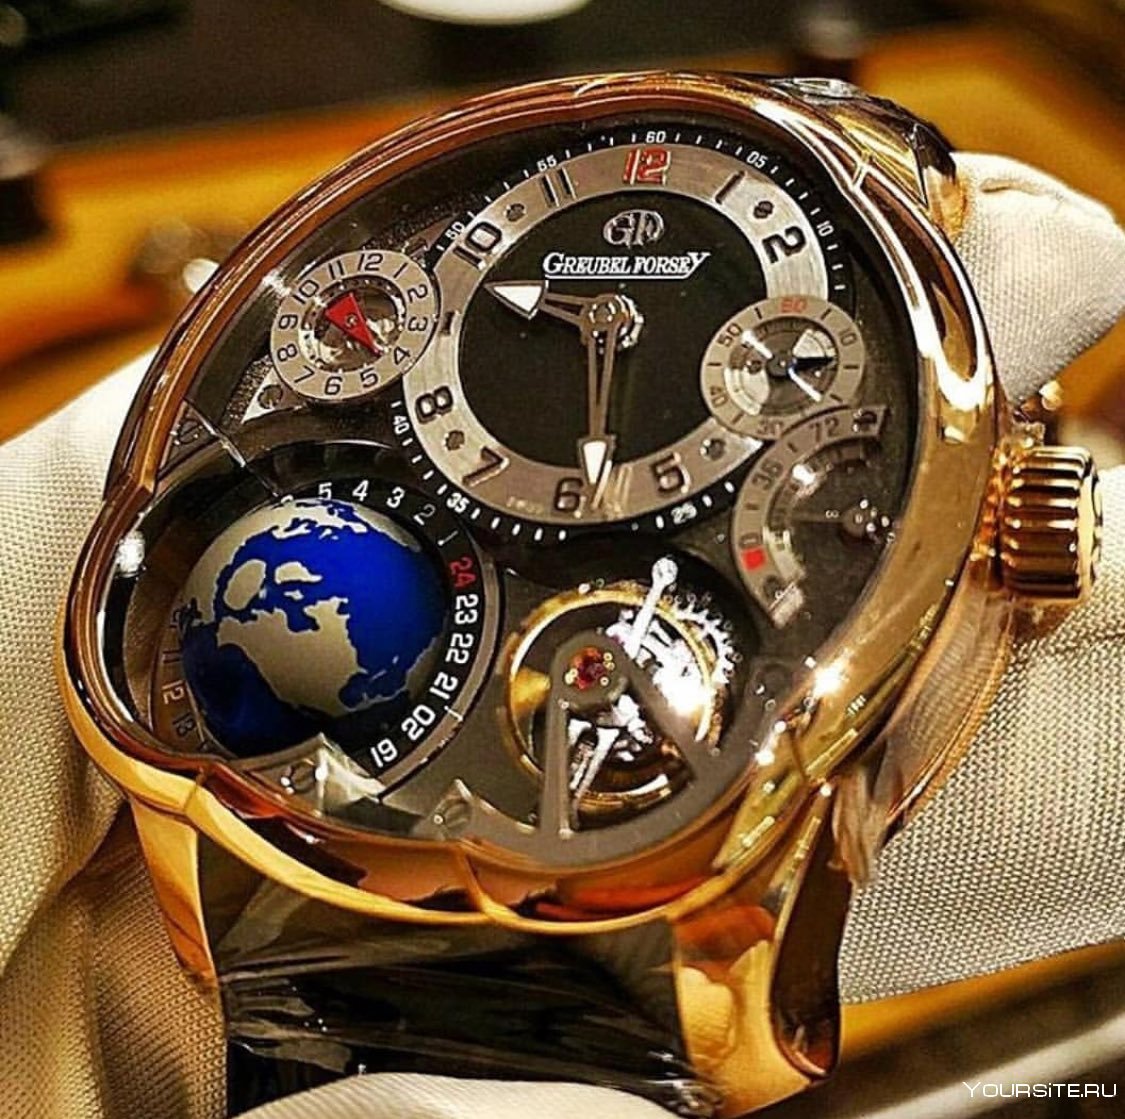 Опт наручных часов. Швейцарские хронографы турбийон. Красивые мужские часы. Необычные часы. Дорогие часы мужские.